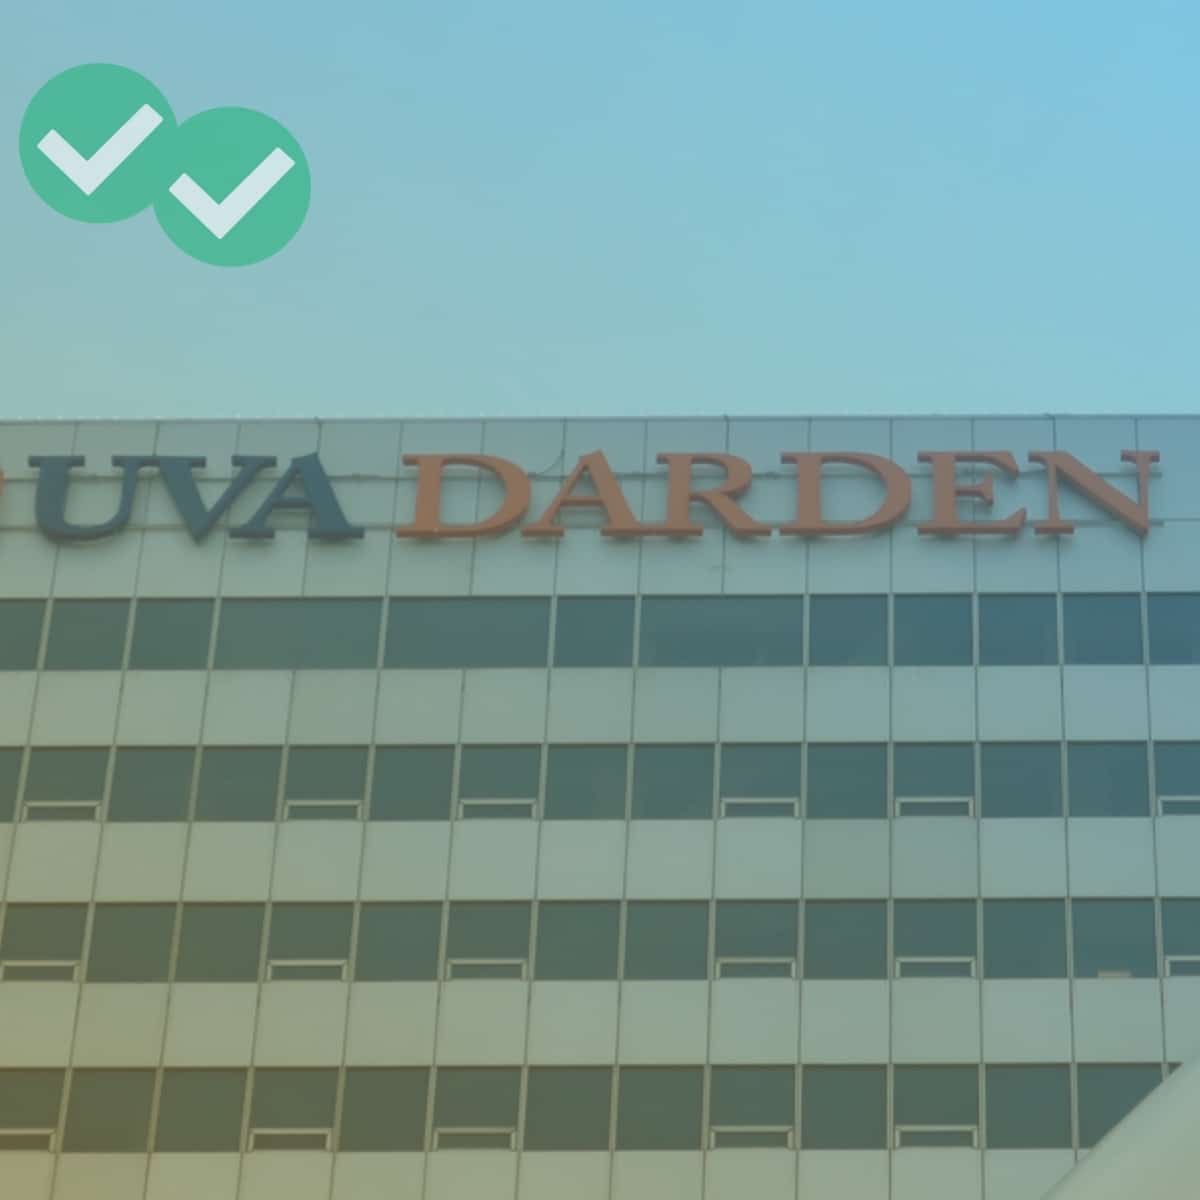 UVA Darden sign on school building